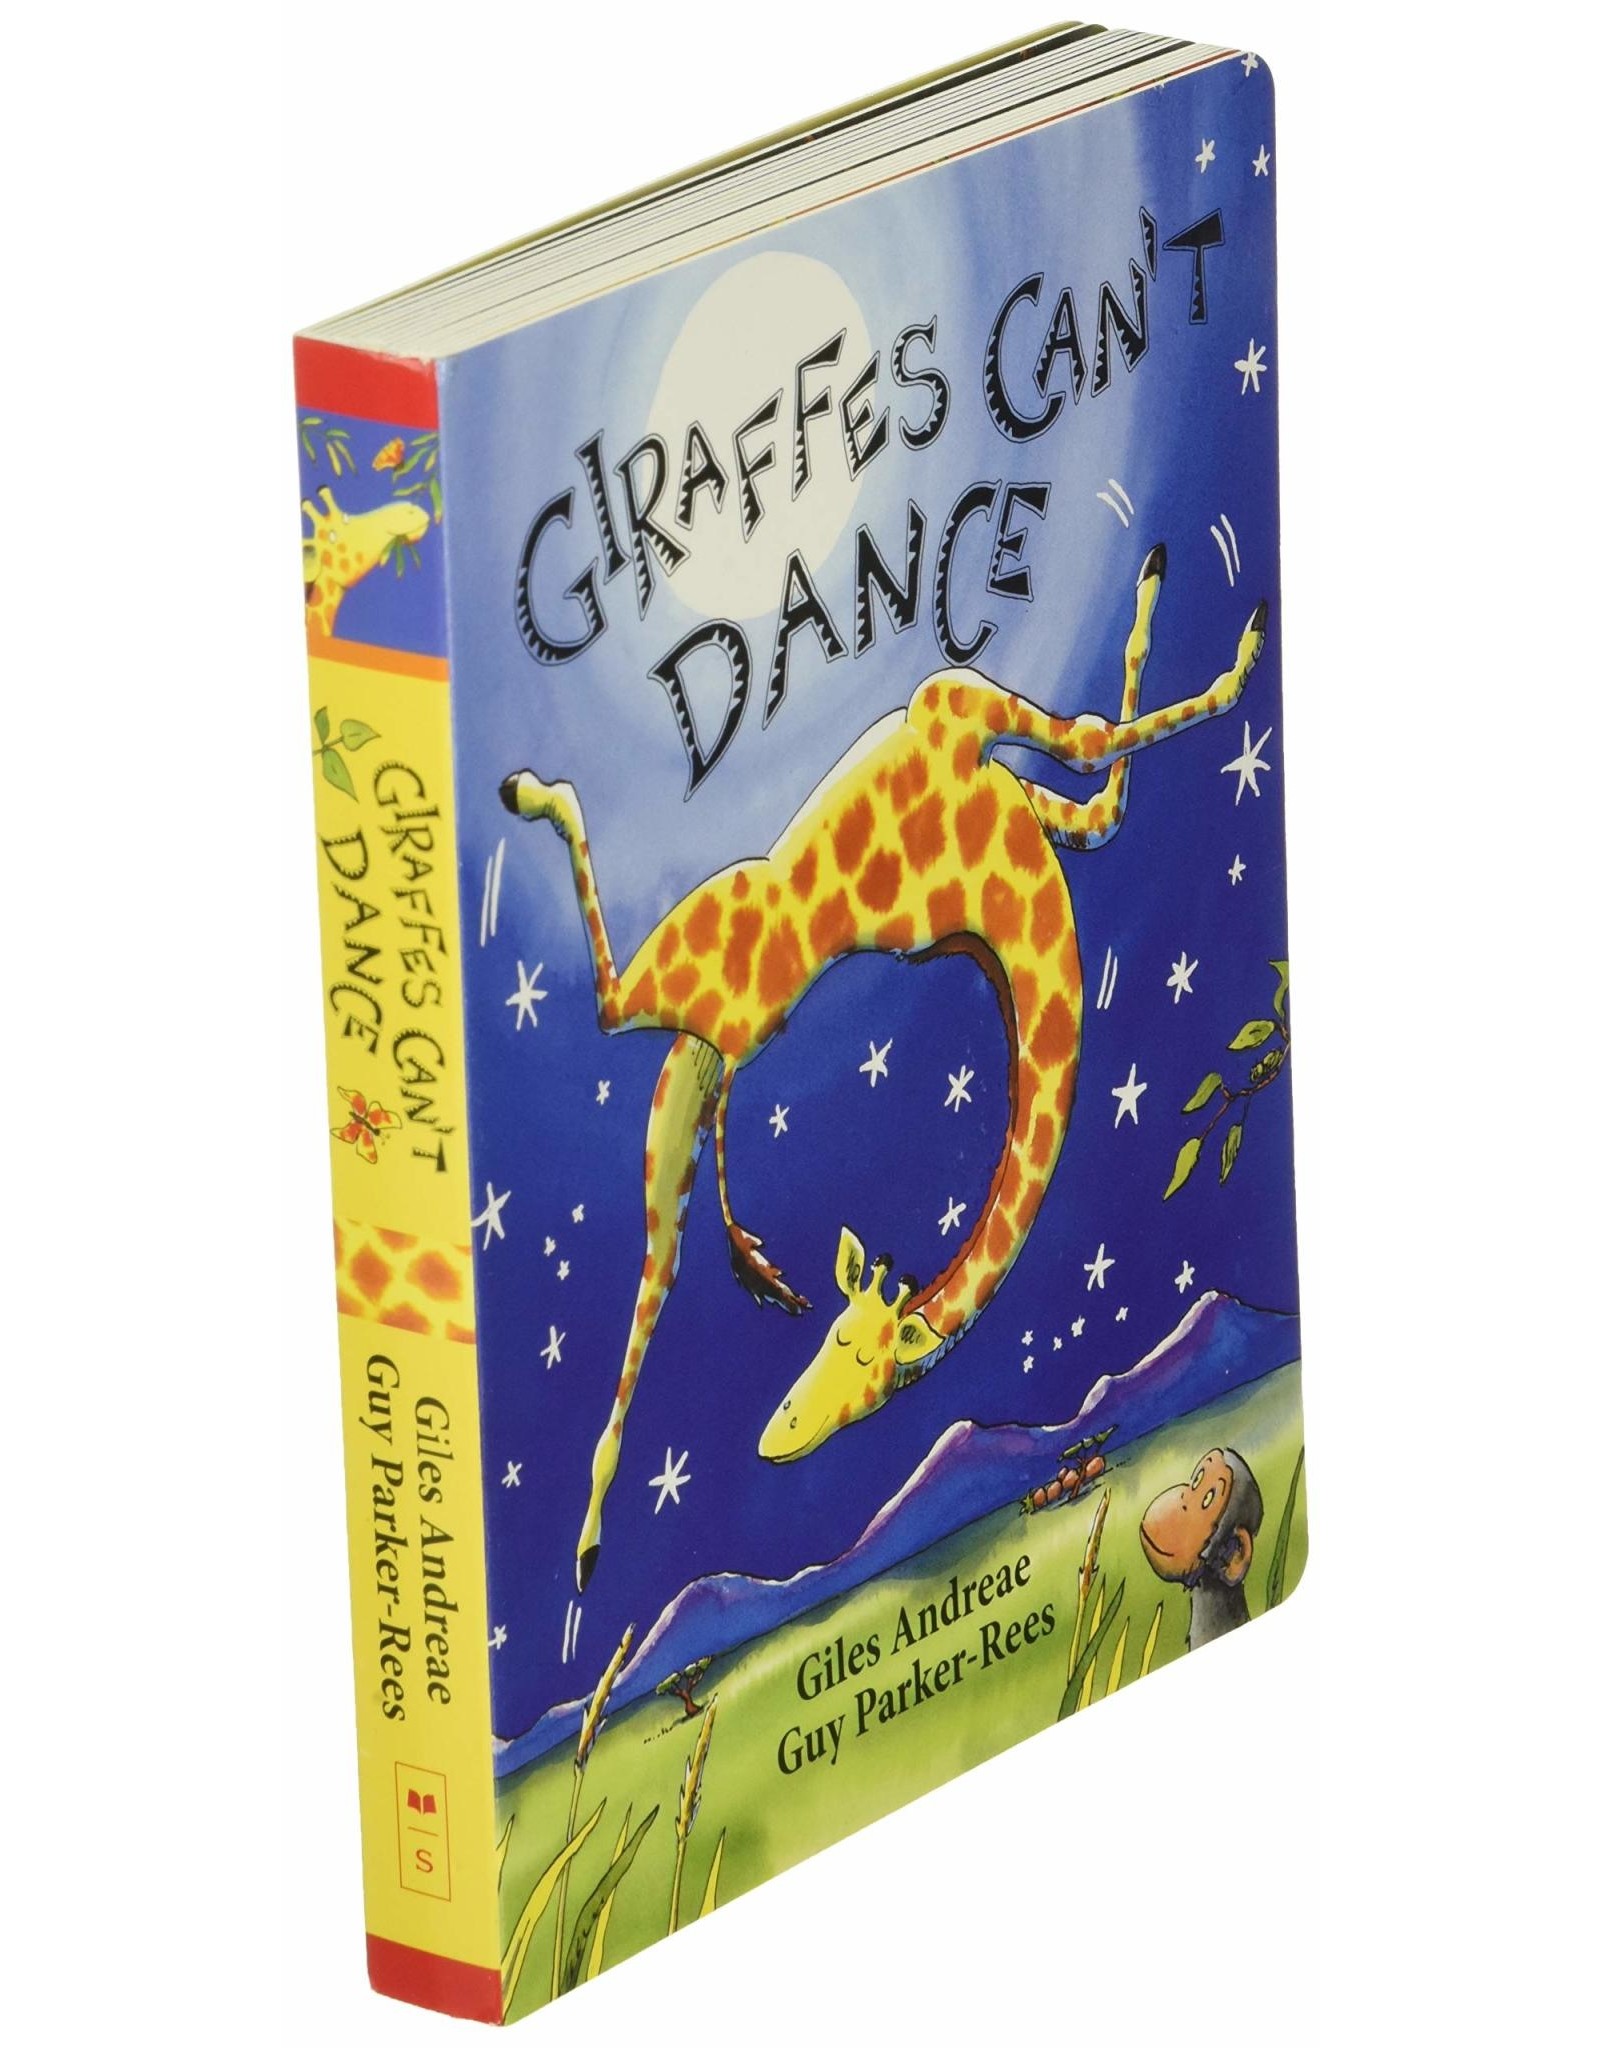 Scholastic Giraffes Can't Dance